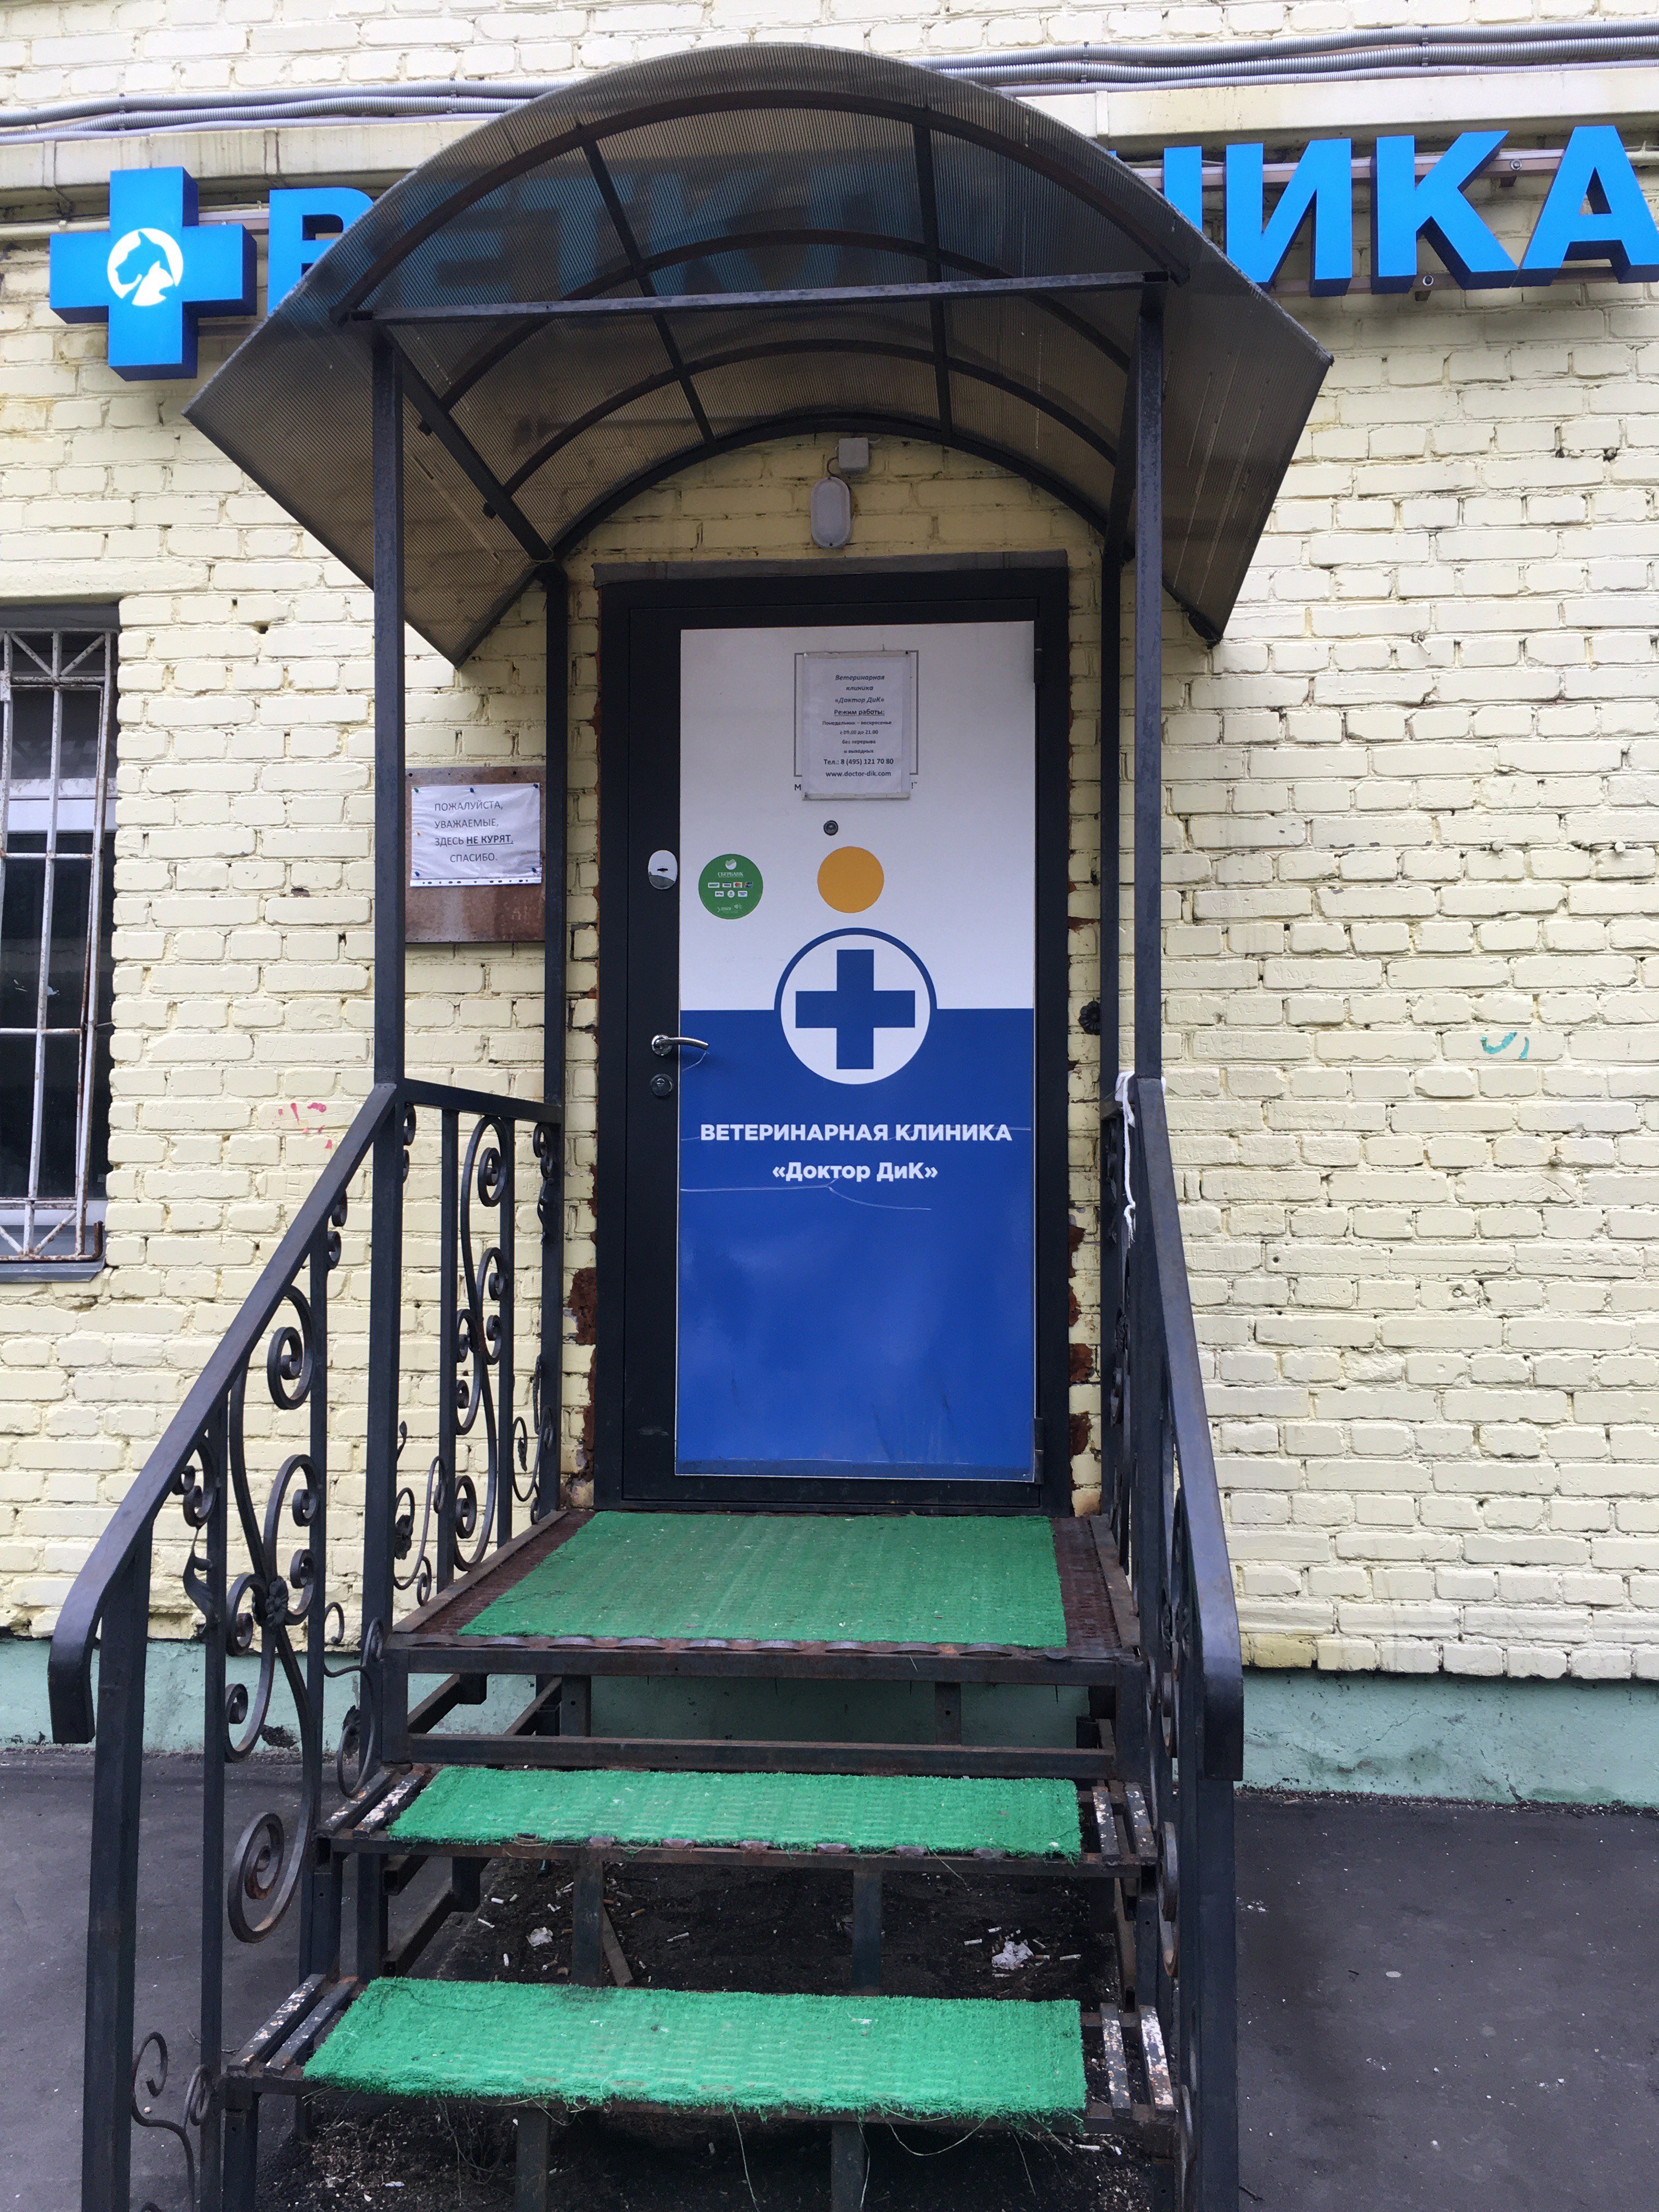 ВетФеникс, ветеринарная клиника, улица Новопоселковая, 6 ст40, 1 этаж